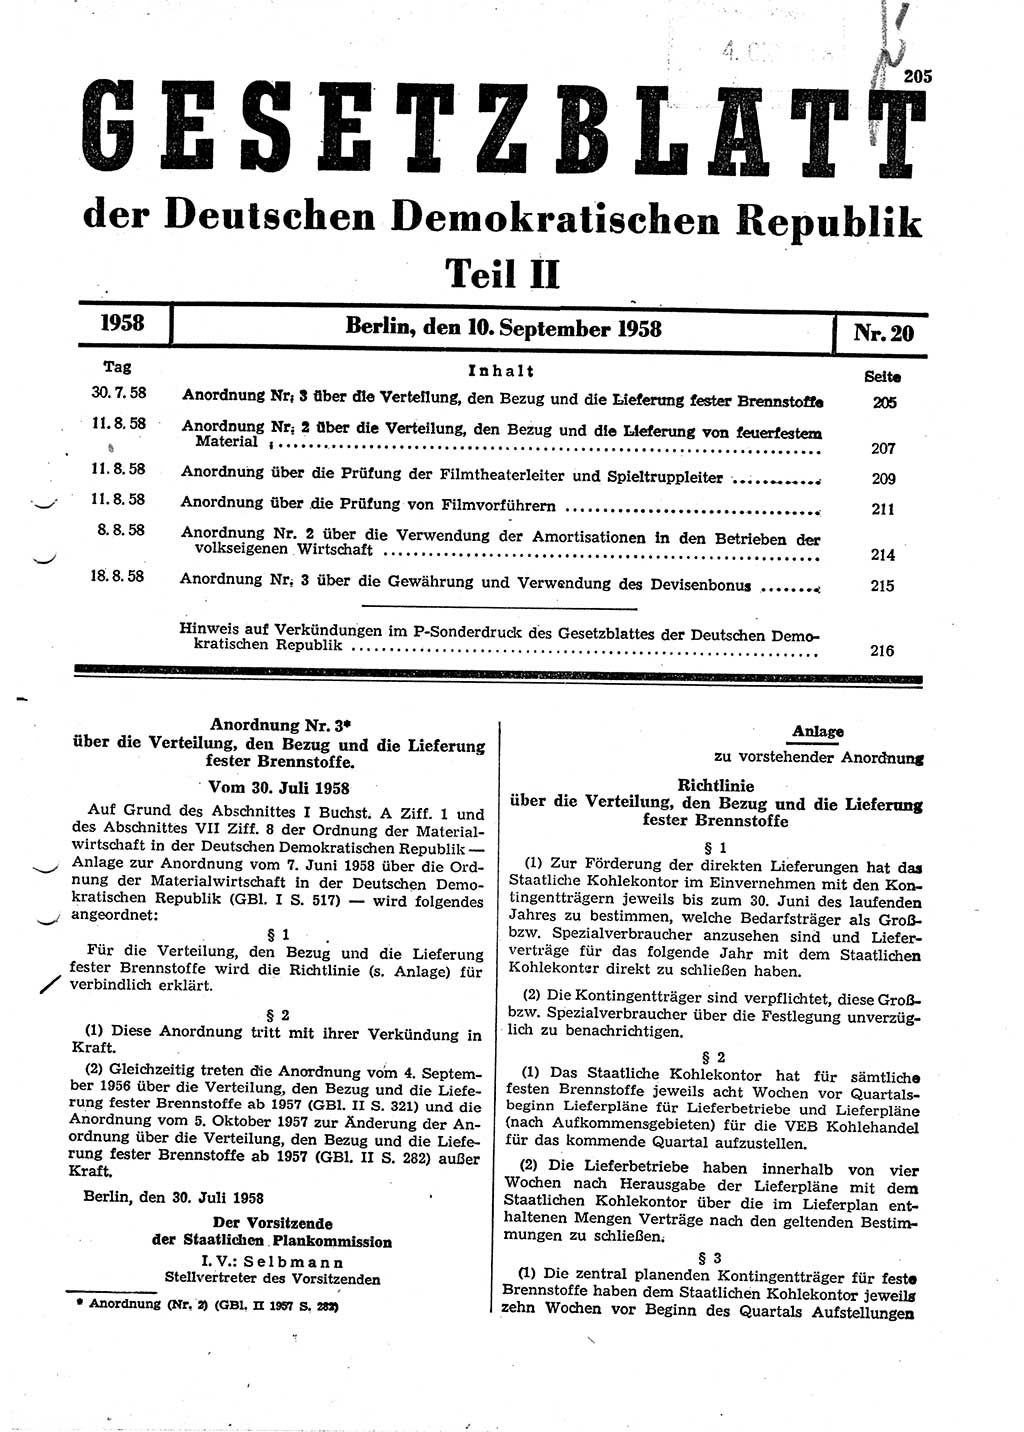 Gesetzblatt (GBl.) der Deutschen Demokratischen Republik (DDR) Teil ⅠⅠ 1958, Seite 205 (GBl. DDR ⅠⅠ 1958, S. 205)